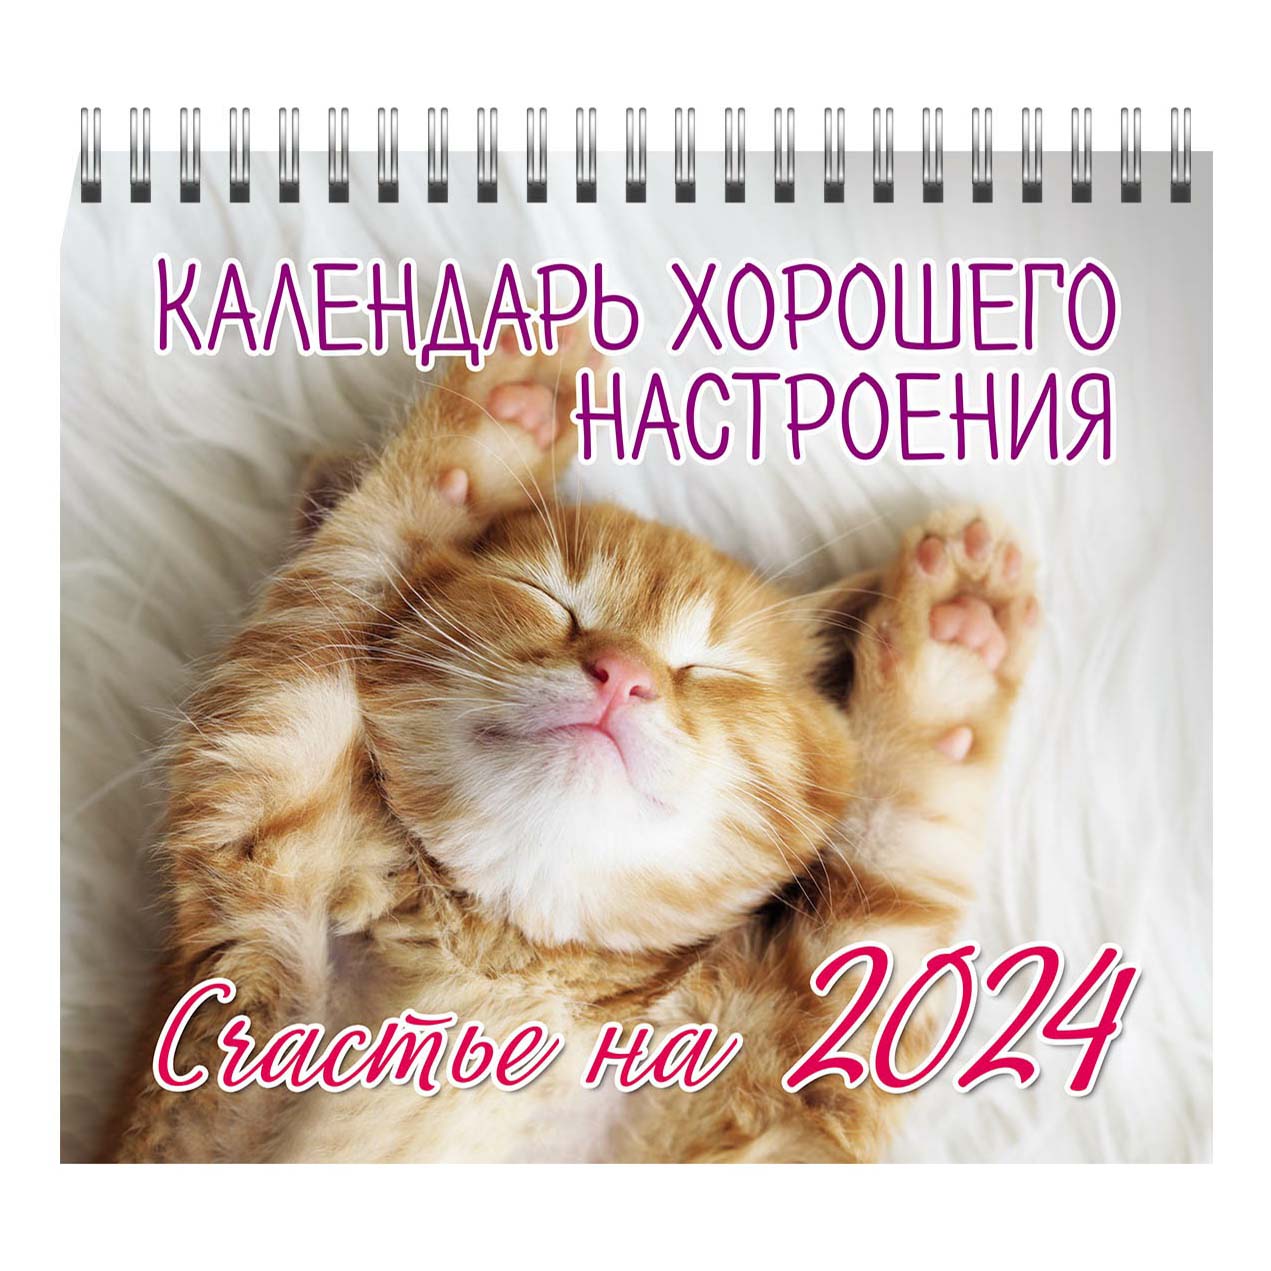 Календарь настольный перекидной Календарь хорошего настроения на 2024 год